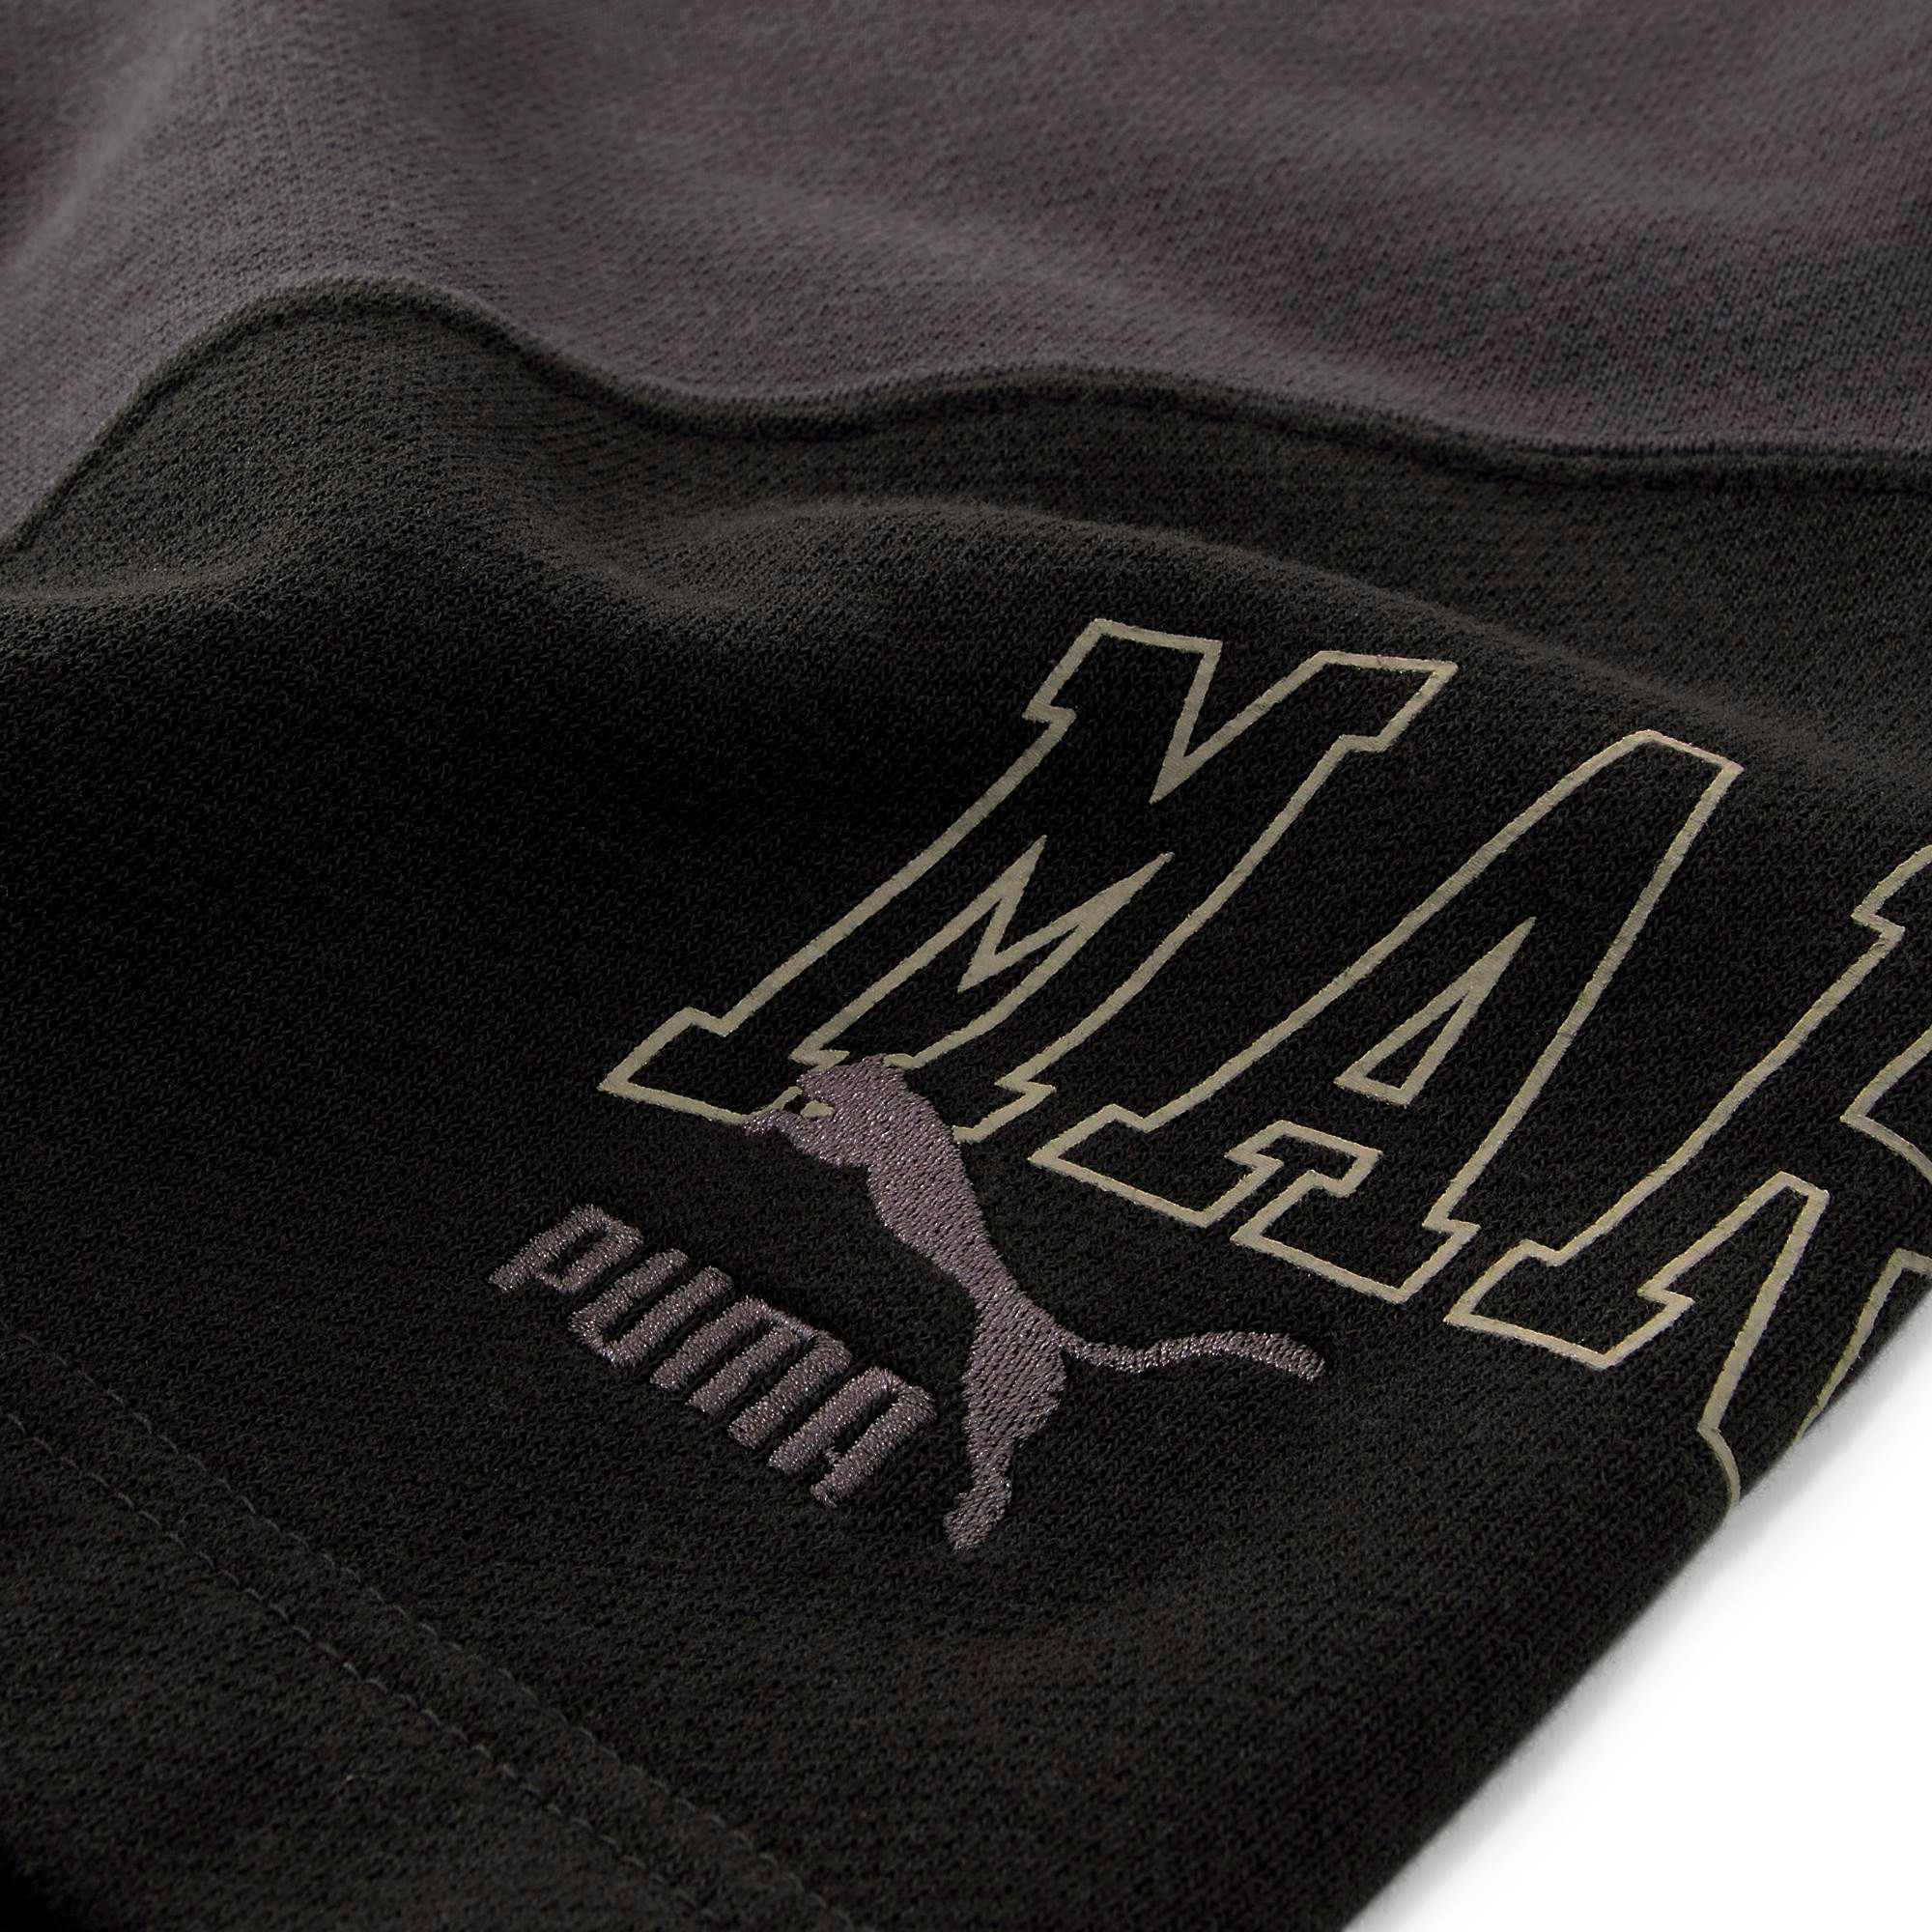 Puma x Market shorts, Black, large image number 2